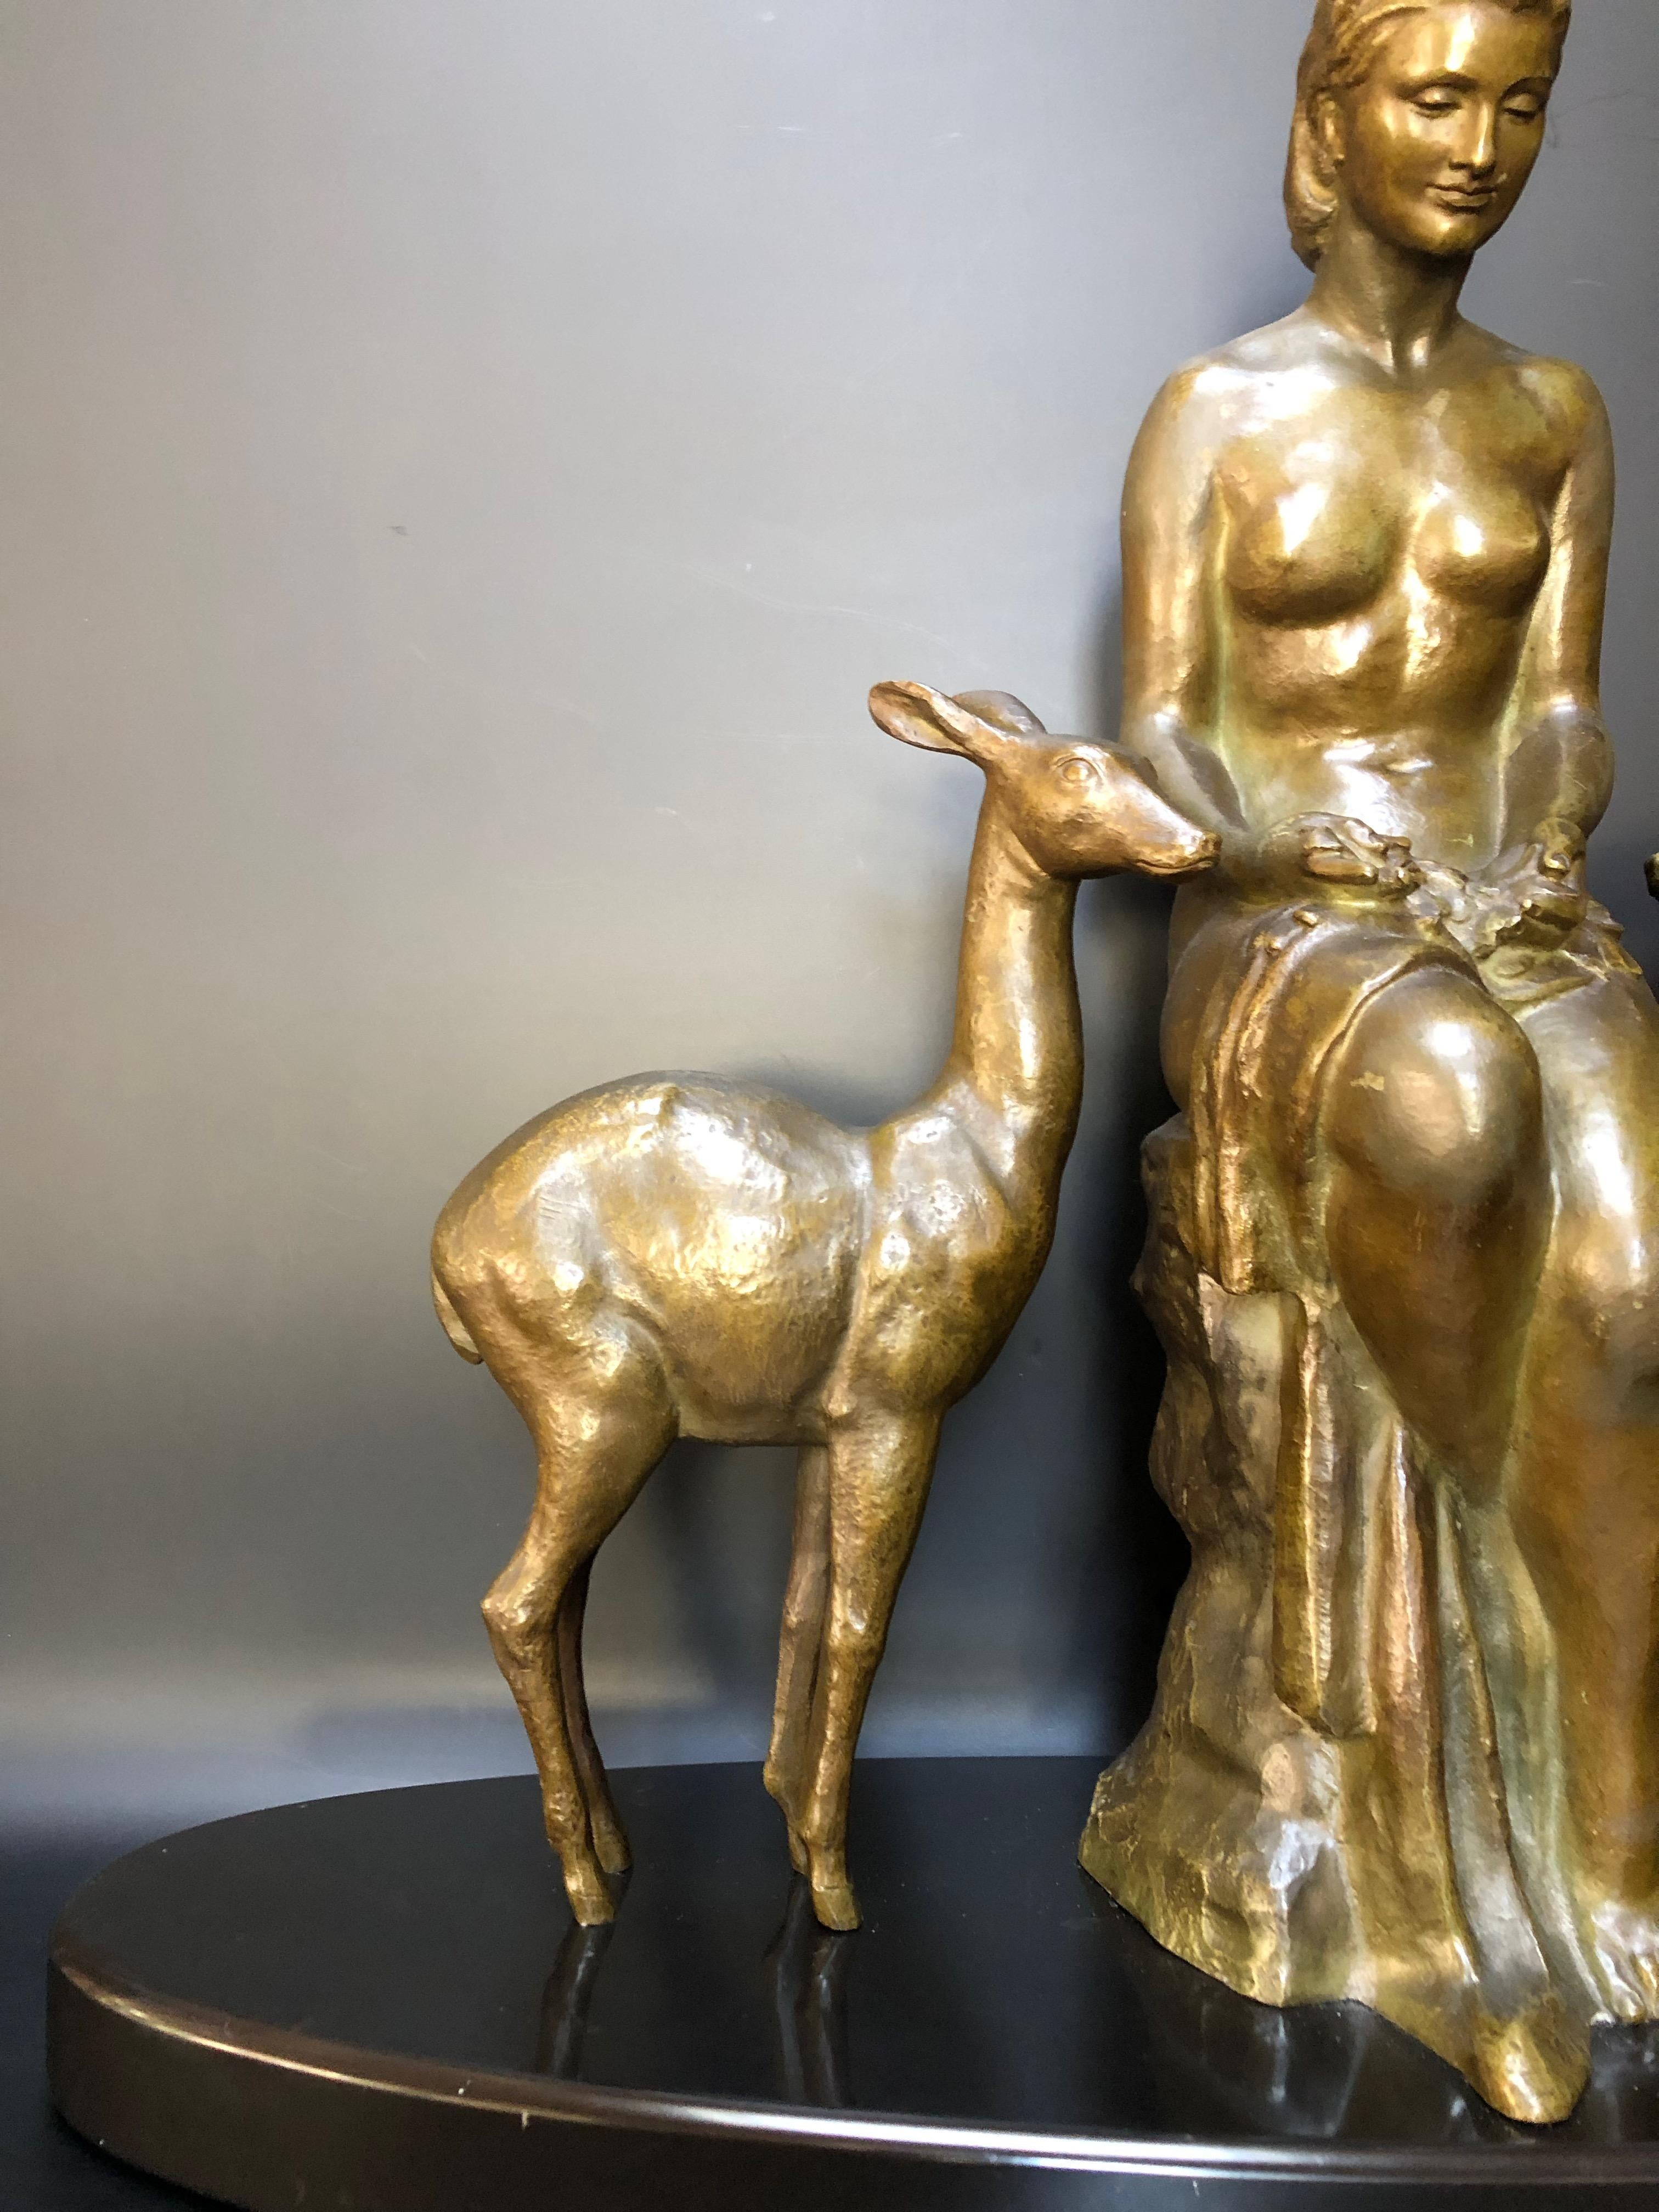 Bronze circa 1935 femme avec faons en bronze à patine verte et brune sur un socle en marbre noir (surfin de Belgique)

Fils d'un sculpteur florentin, Ugo Cipriani, 1887 - 1960, a étudié à l'Académie des beaux-arts de Florence et a rejoint le